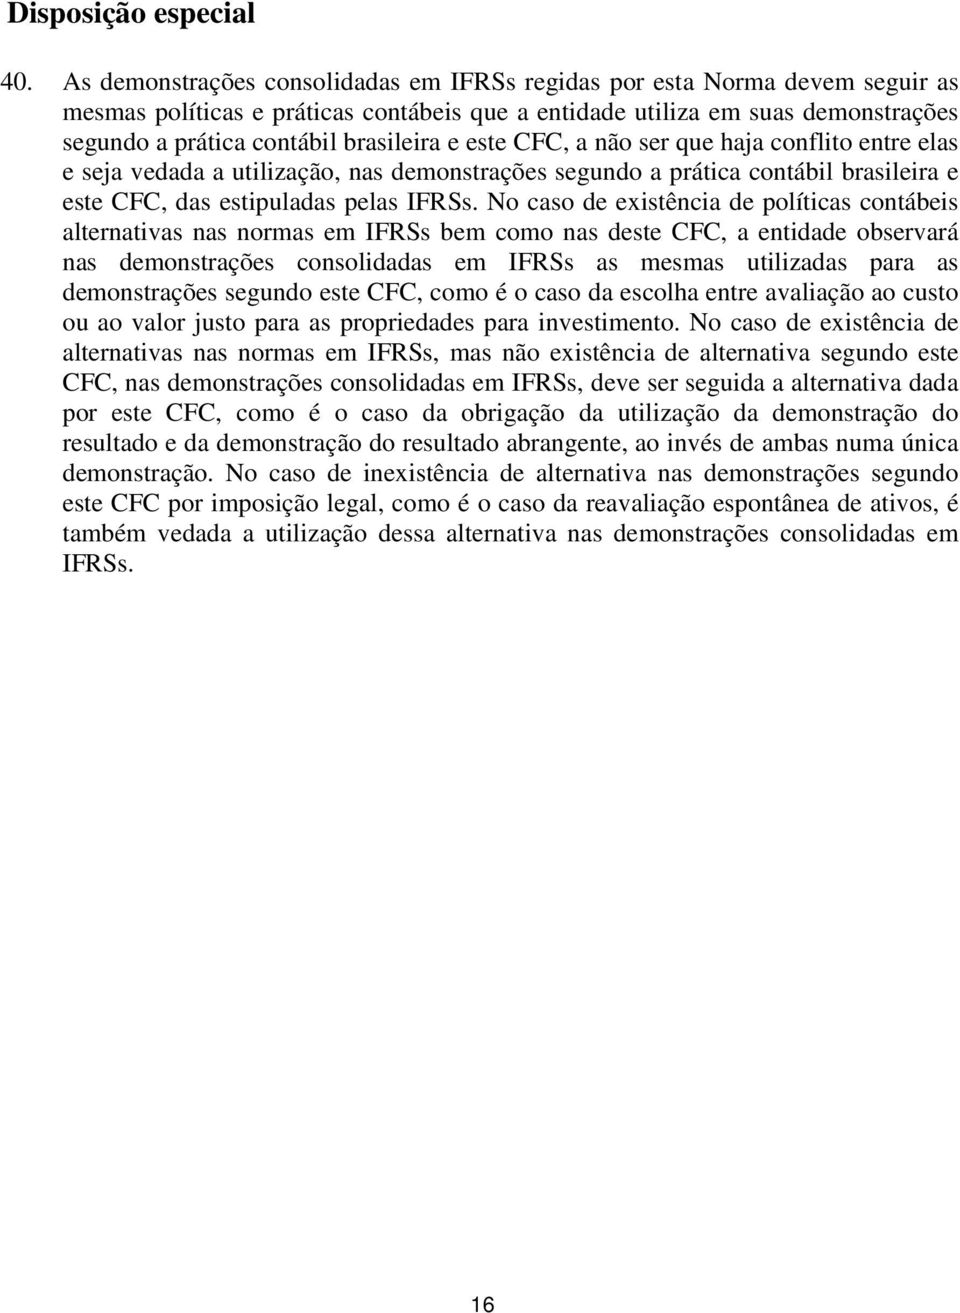 e este CFC, a não ser que haja conflito entre elas e seja vedada a utilização, nas demonstrações segundo a prática contábil brasileira e este CFC, das estipuladas pelas IFRSs.